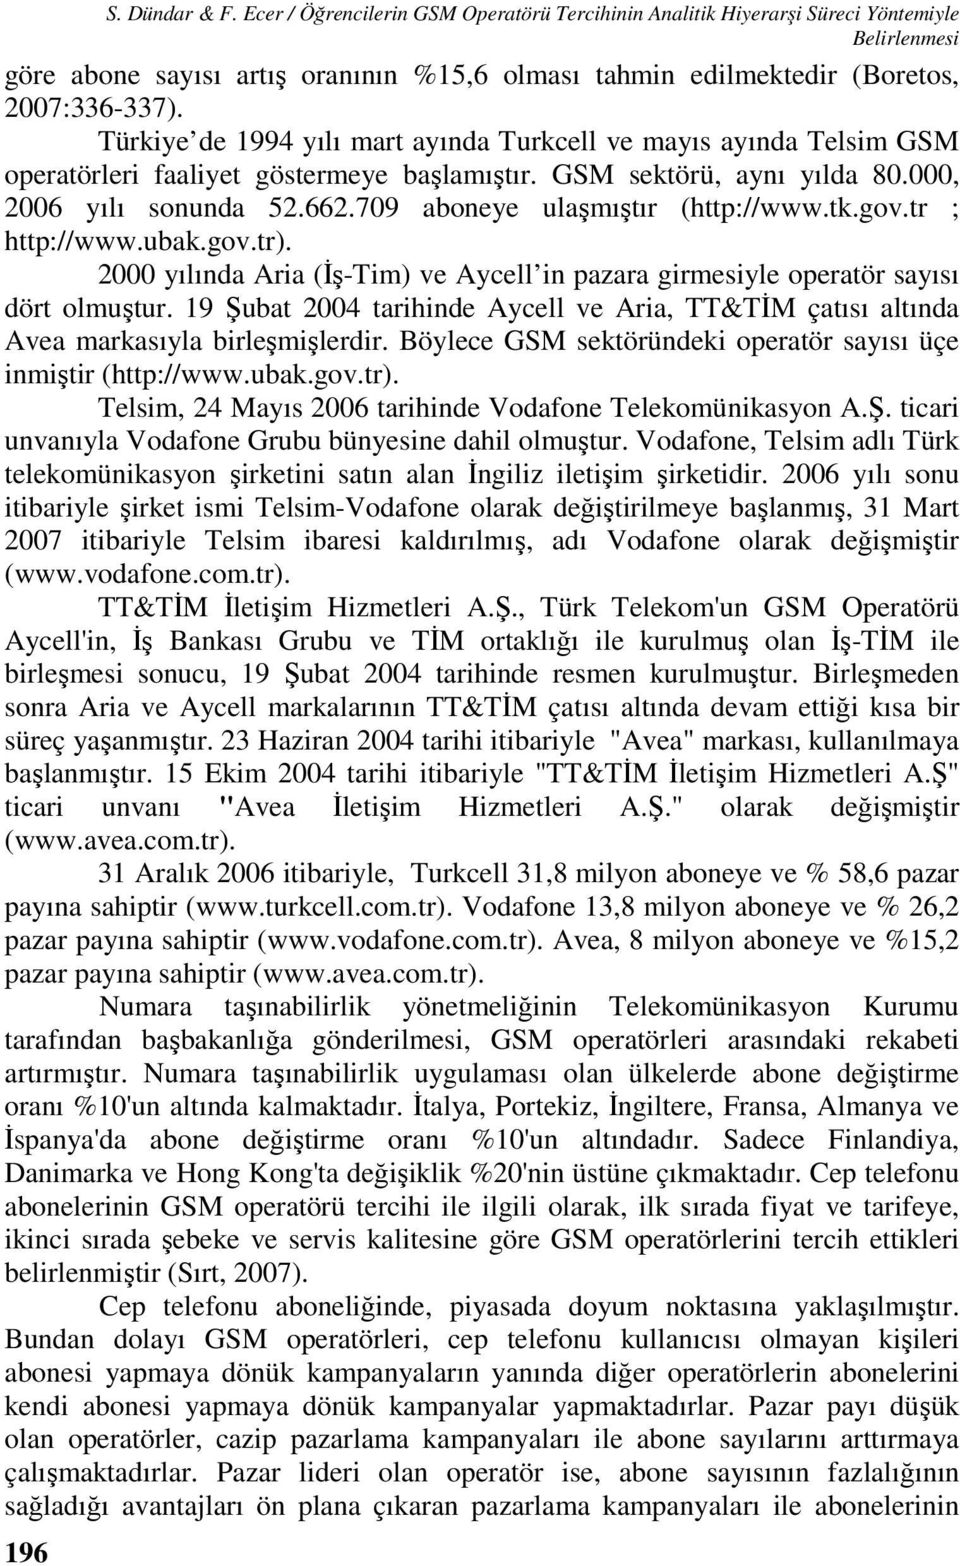 Türkiye de 1994 yılı mart ayında Turkcell ve mayıs ayında Telsim GSM operatörleri faaliyet göstermeye başlamıştır. GSM sektörü, aynı yılda 80.000, 2006 yılı sonunda 52.662.